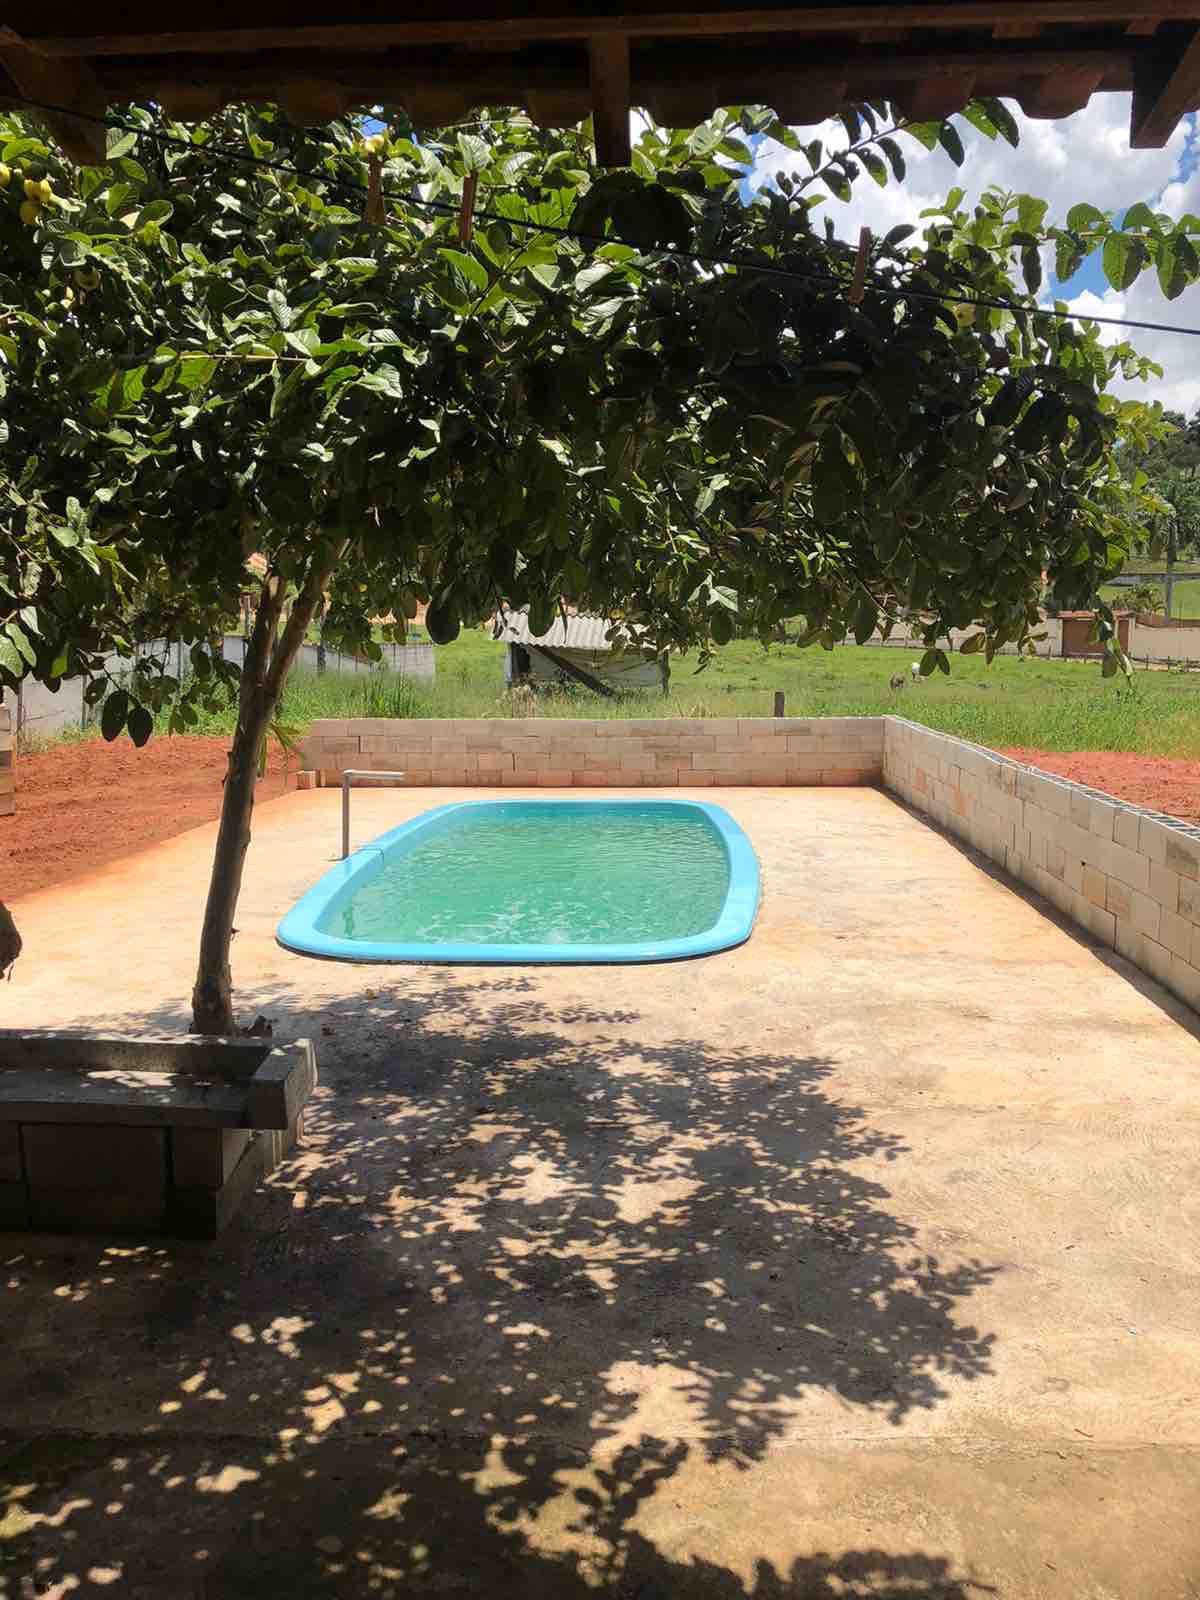 Sítio agradável com piscina há 2km de Pouso Alegre